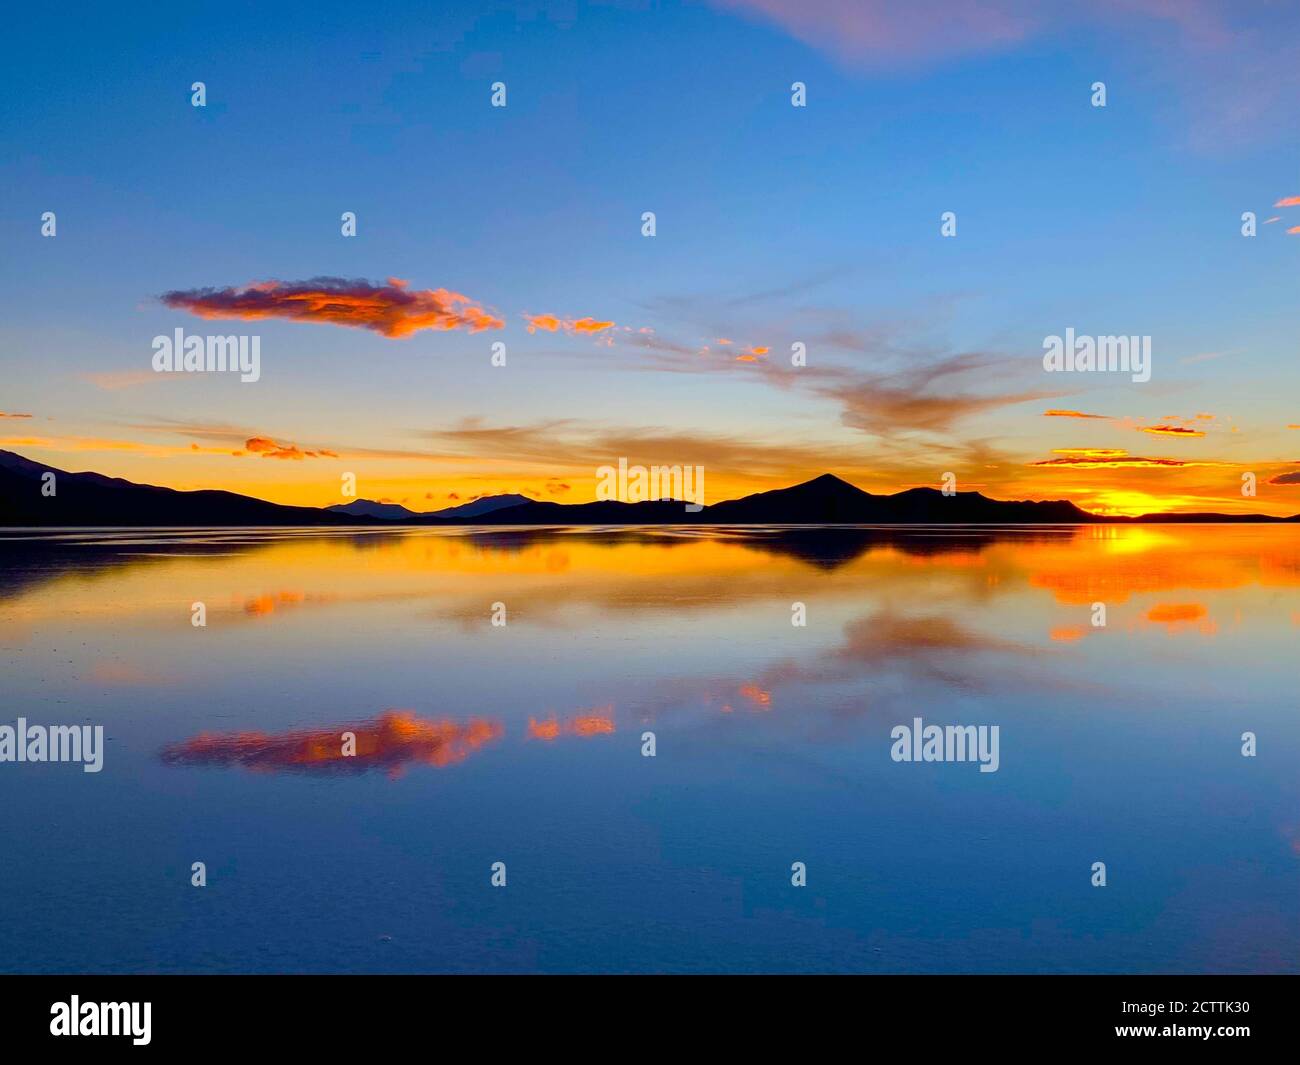 Reflet spectaculaire du coucher de soleil dans l'eau salée. Un coucher de soleil spectaculaire. Lac désert Salar de Uyuni. Ciel coloré. Magnifique coucher de soleil réfléchissant dans les Andes boliviennes Banque D'Images